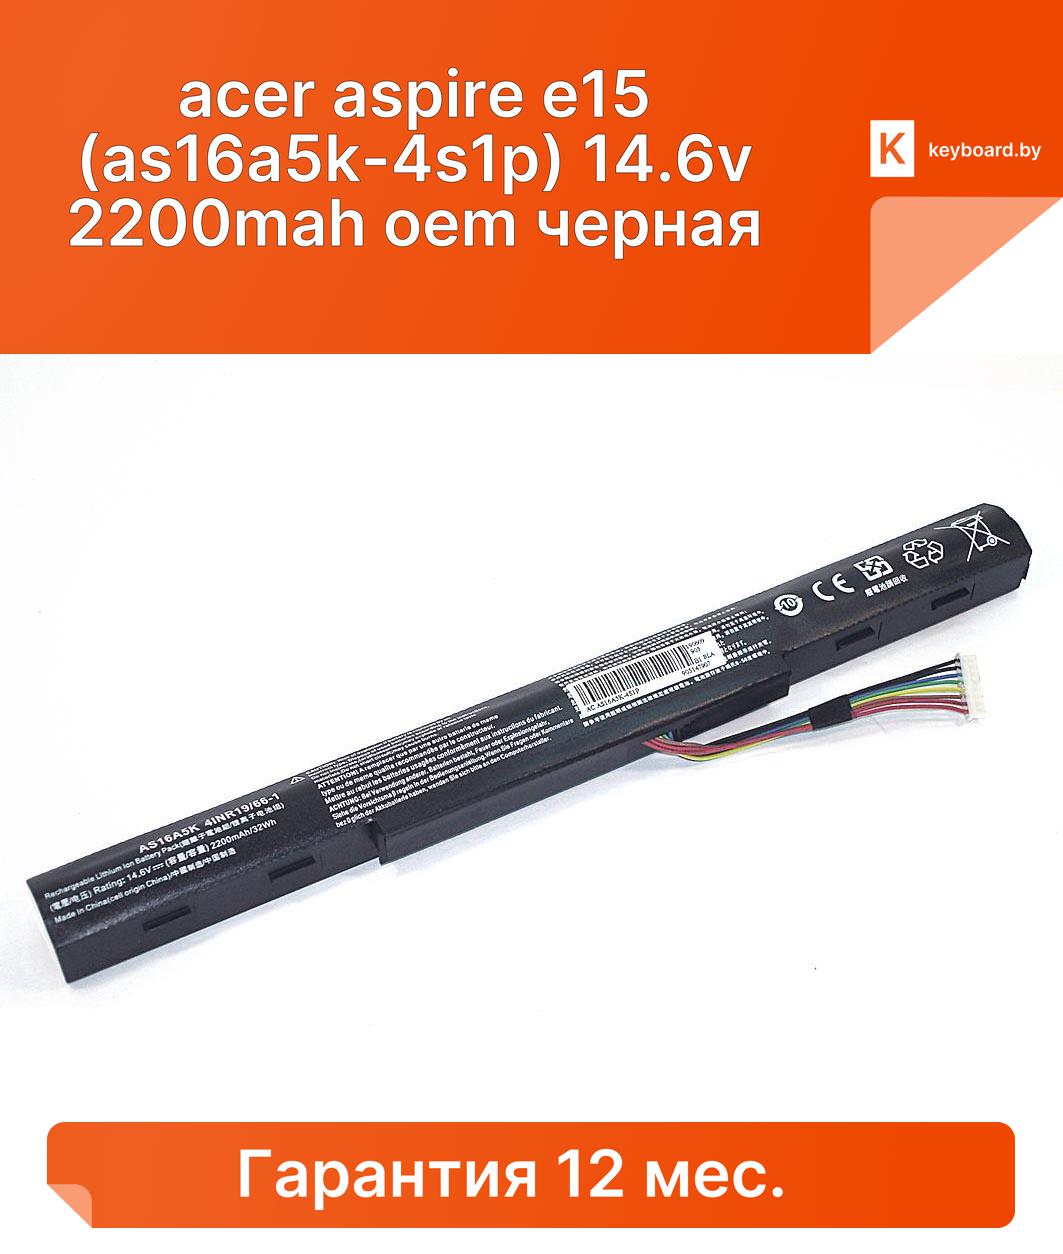 Аккумуляторная батарея для ноутбука acer aspire e15 (as16a5k-4s1p) 14.6v 2200mah oem черная